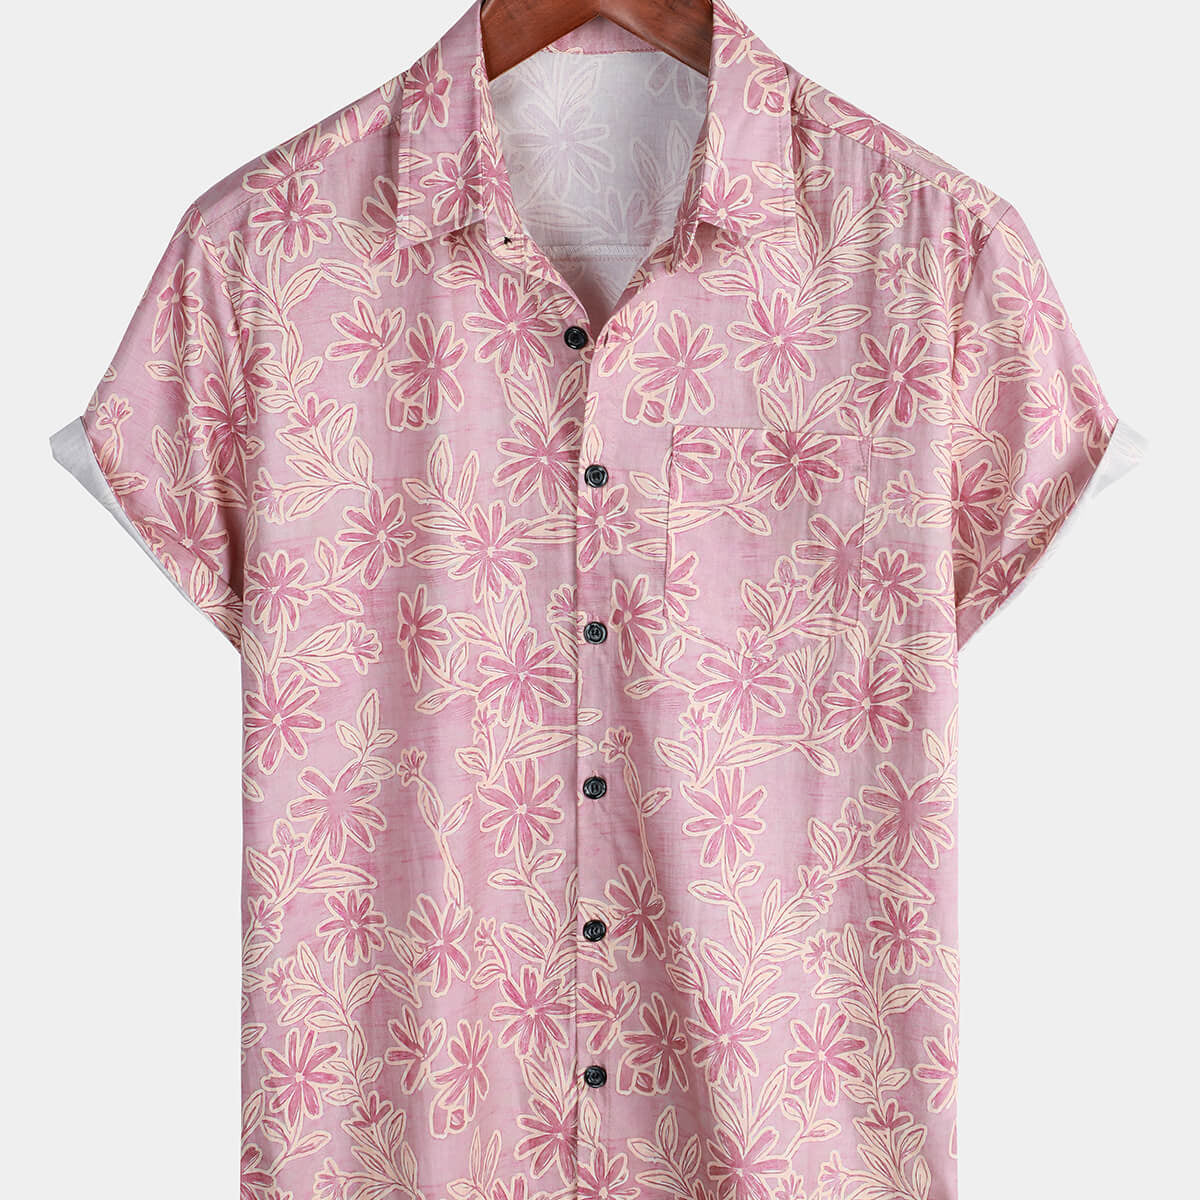 Men's Pink Floral Hawaiian Summer Cotton Short Sleeve Shirt